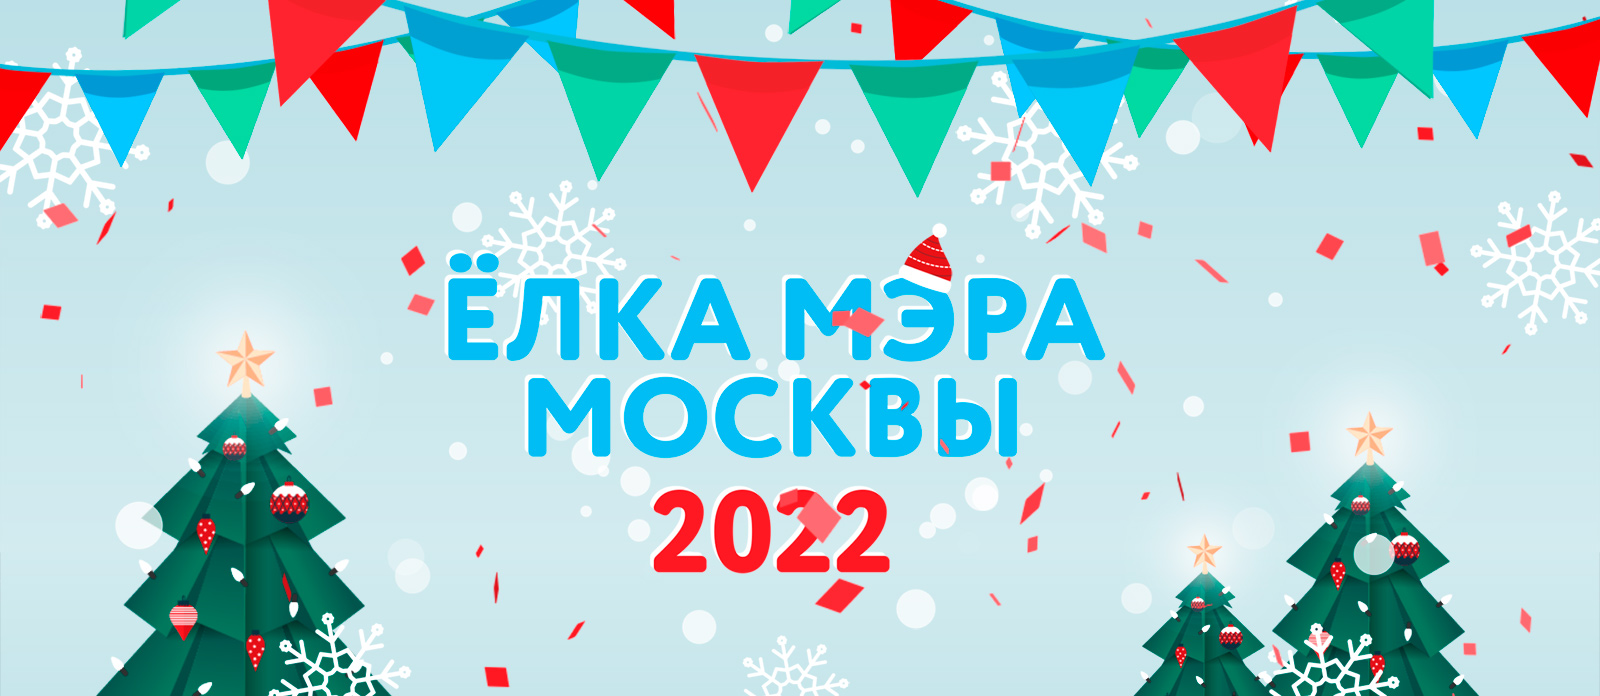 Ёлка мэра Москвы 2022